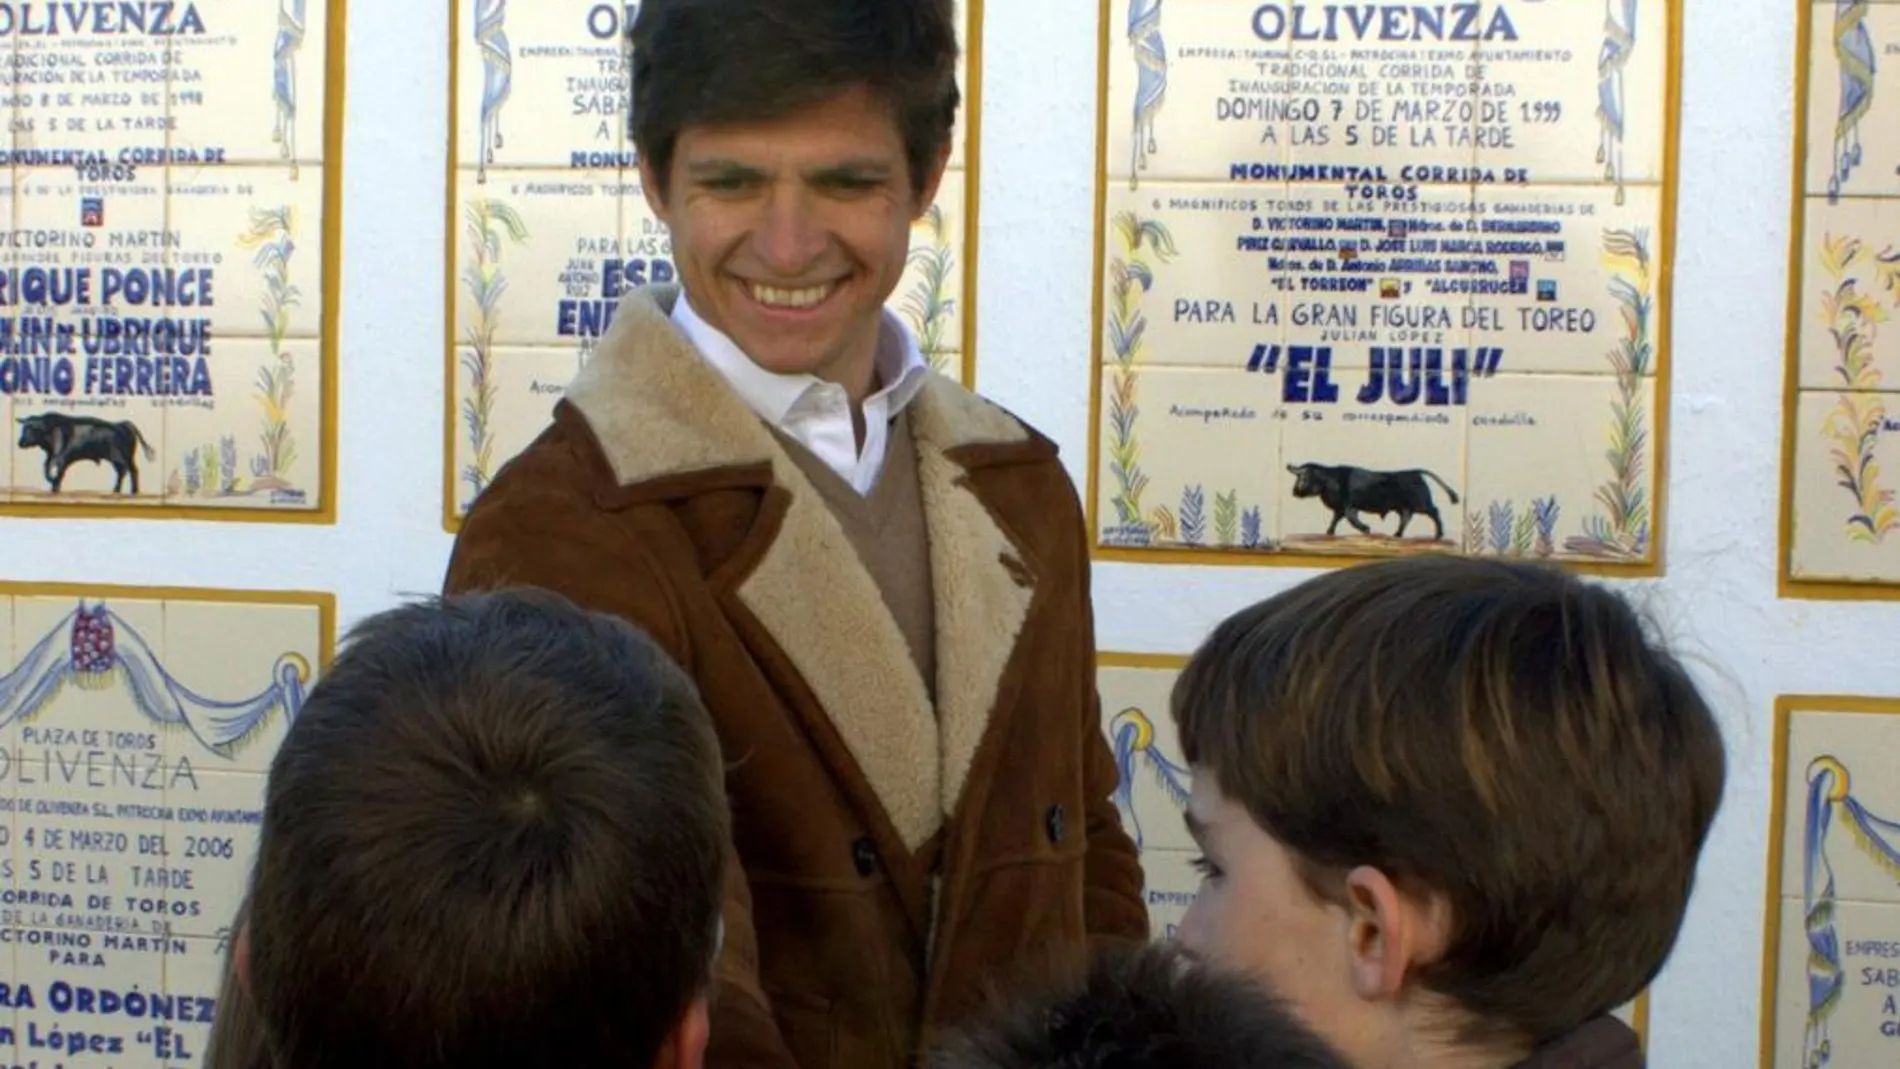 El Juli charla con varios niños en el patio de caballos del coso de Olivenza